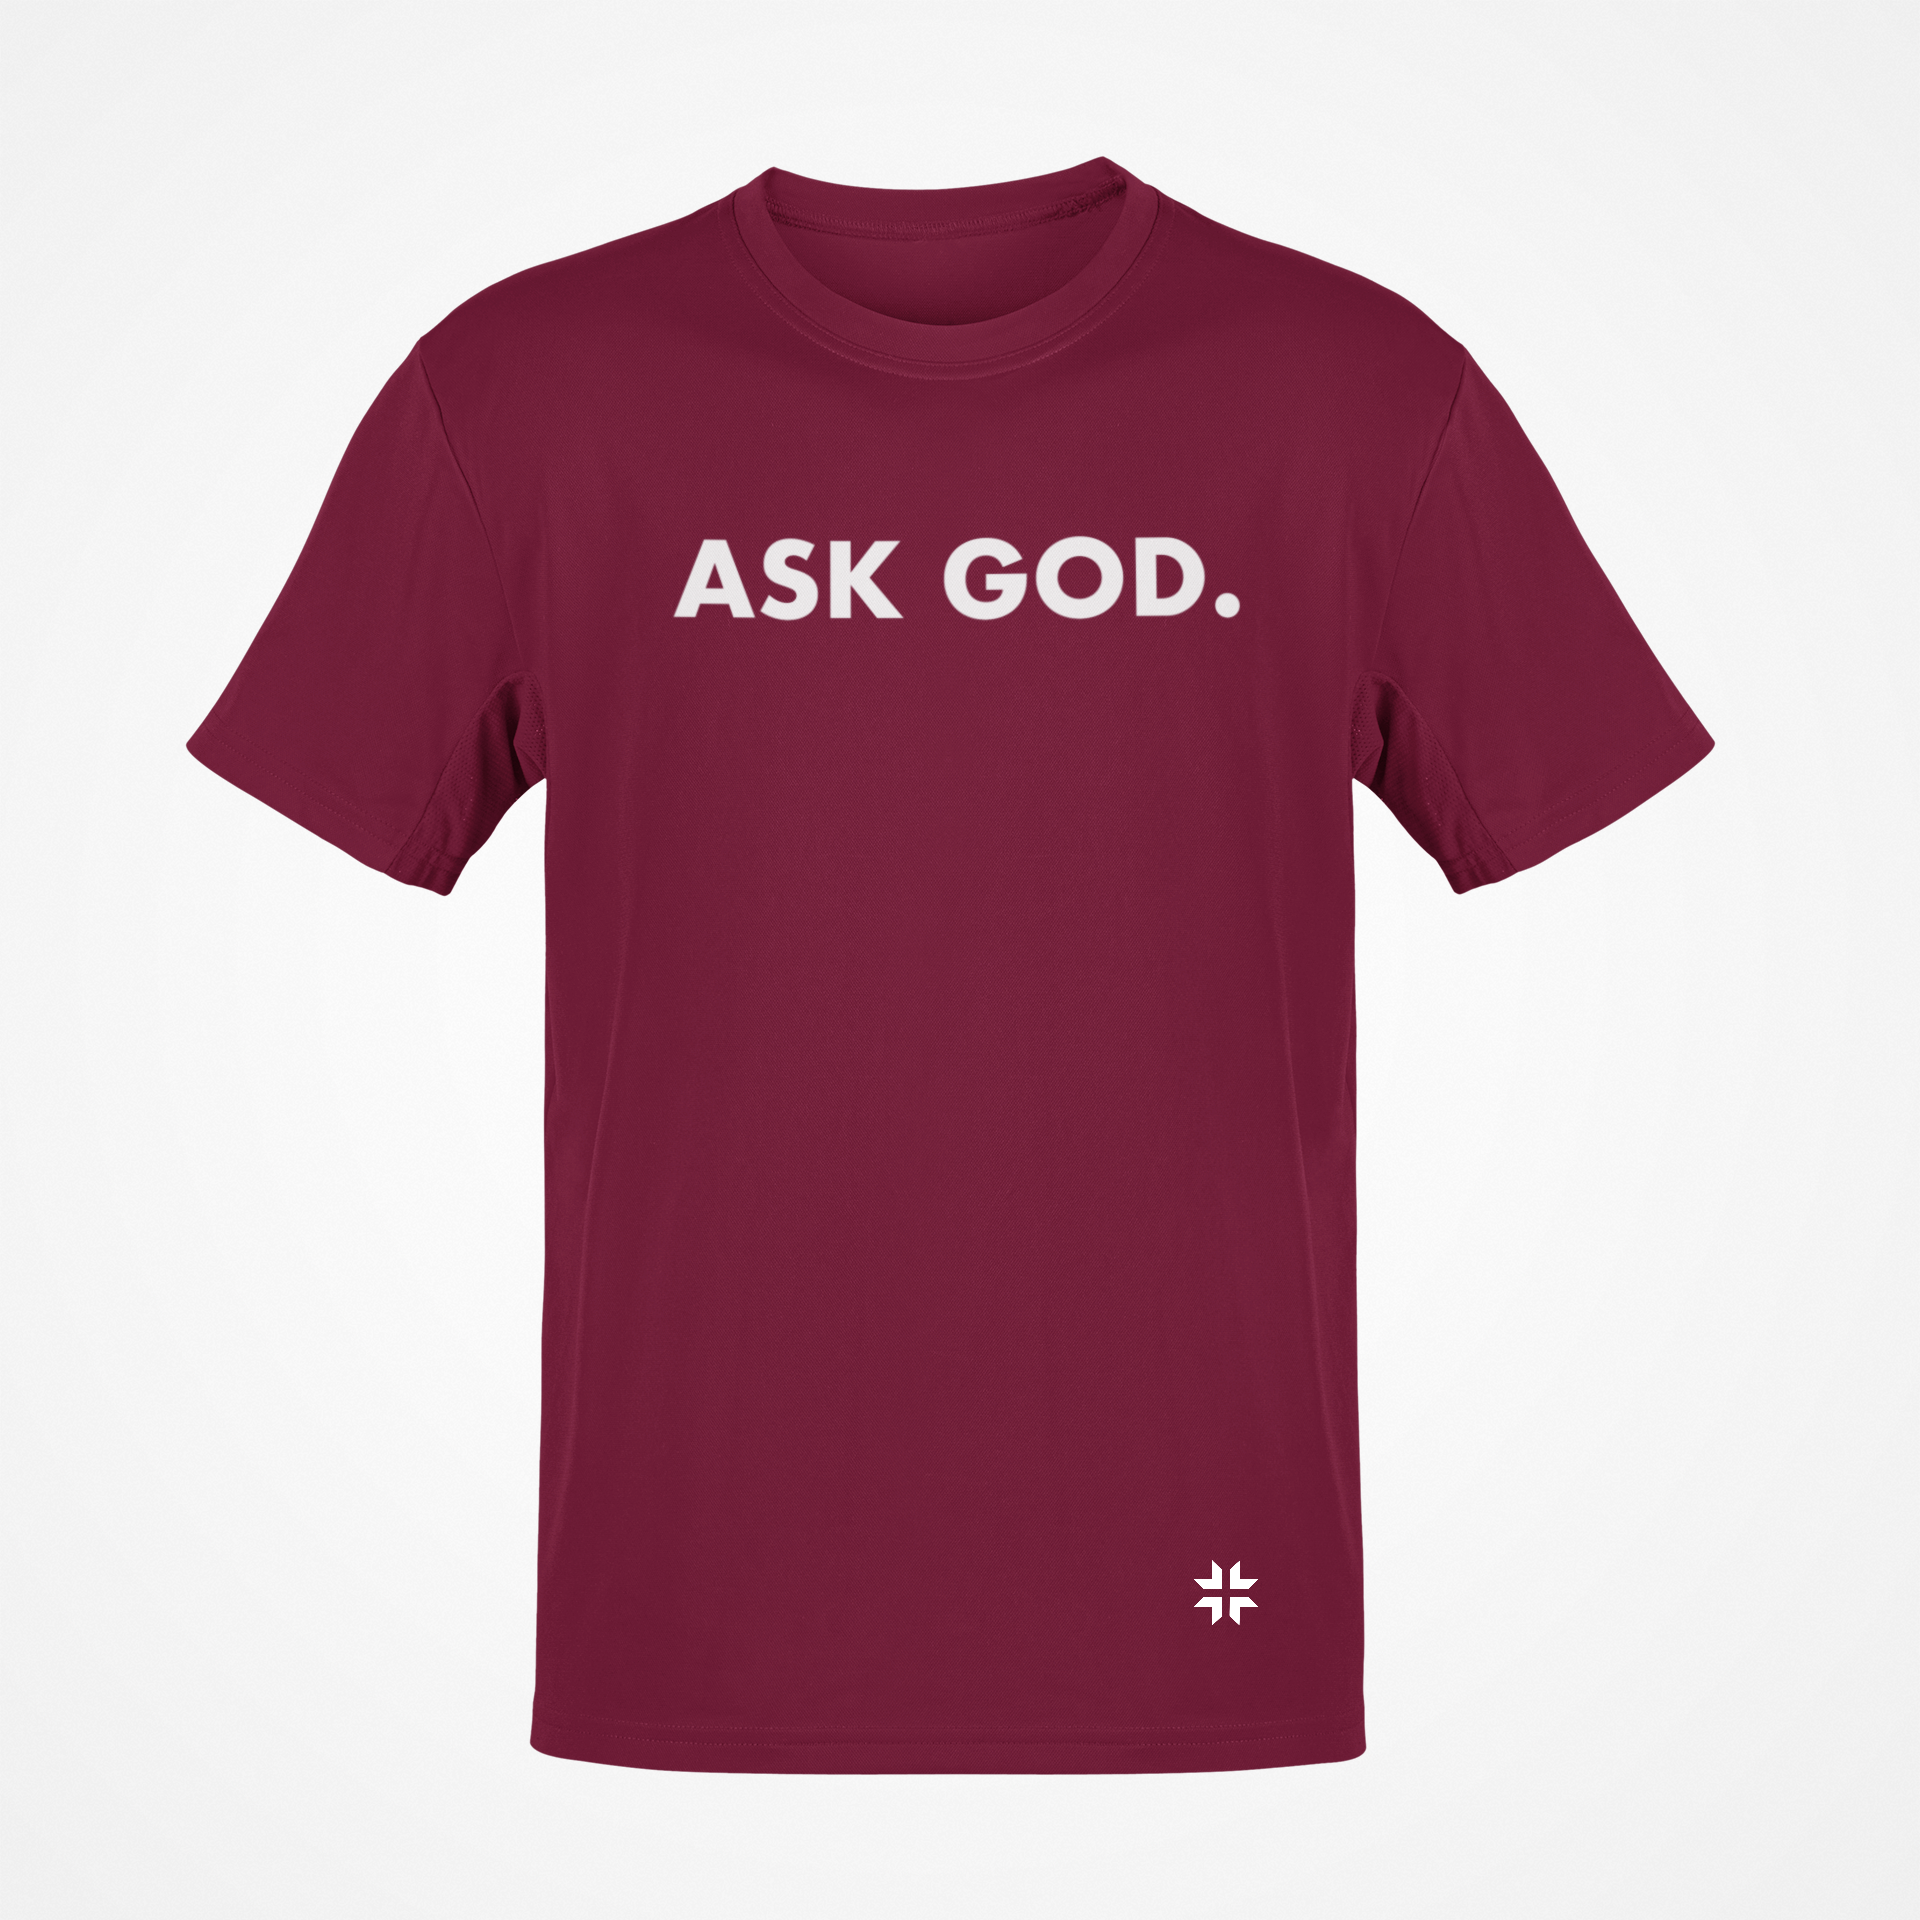 ASK GOD